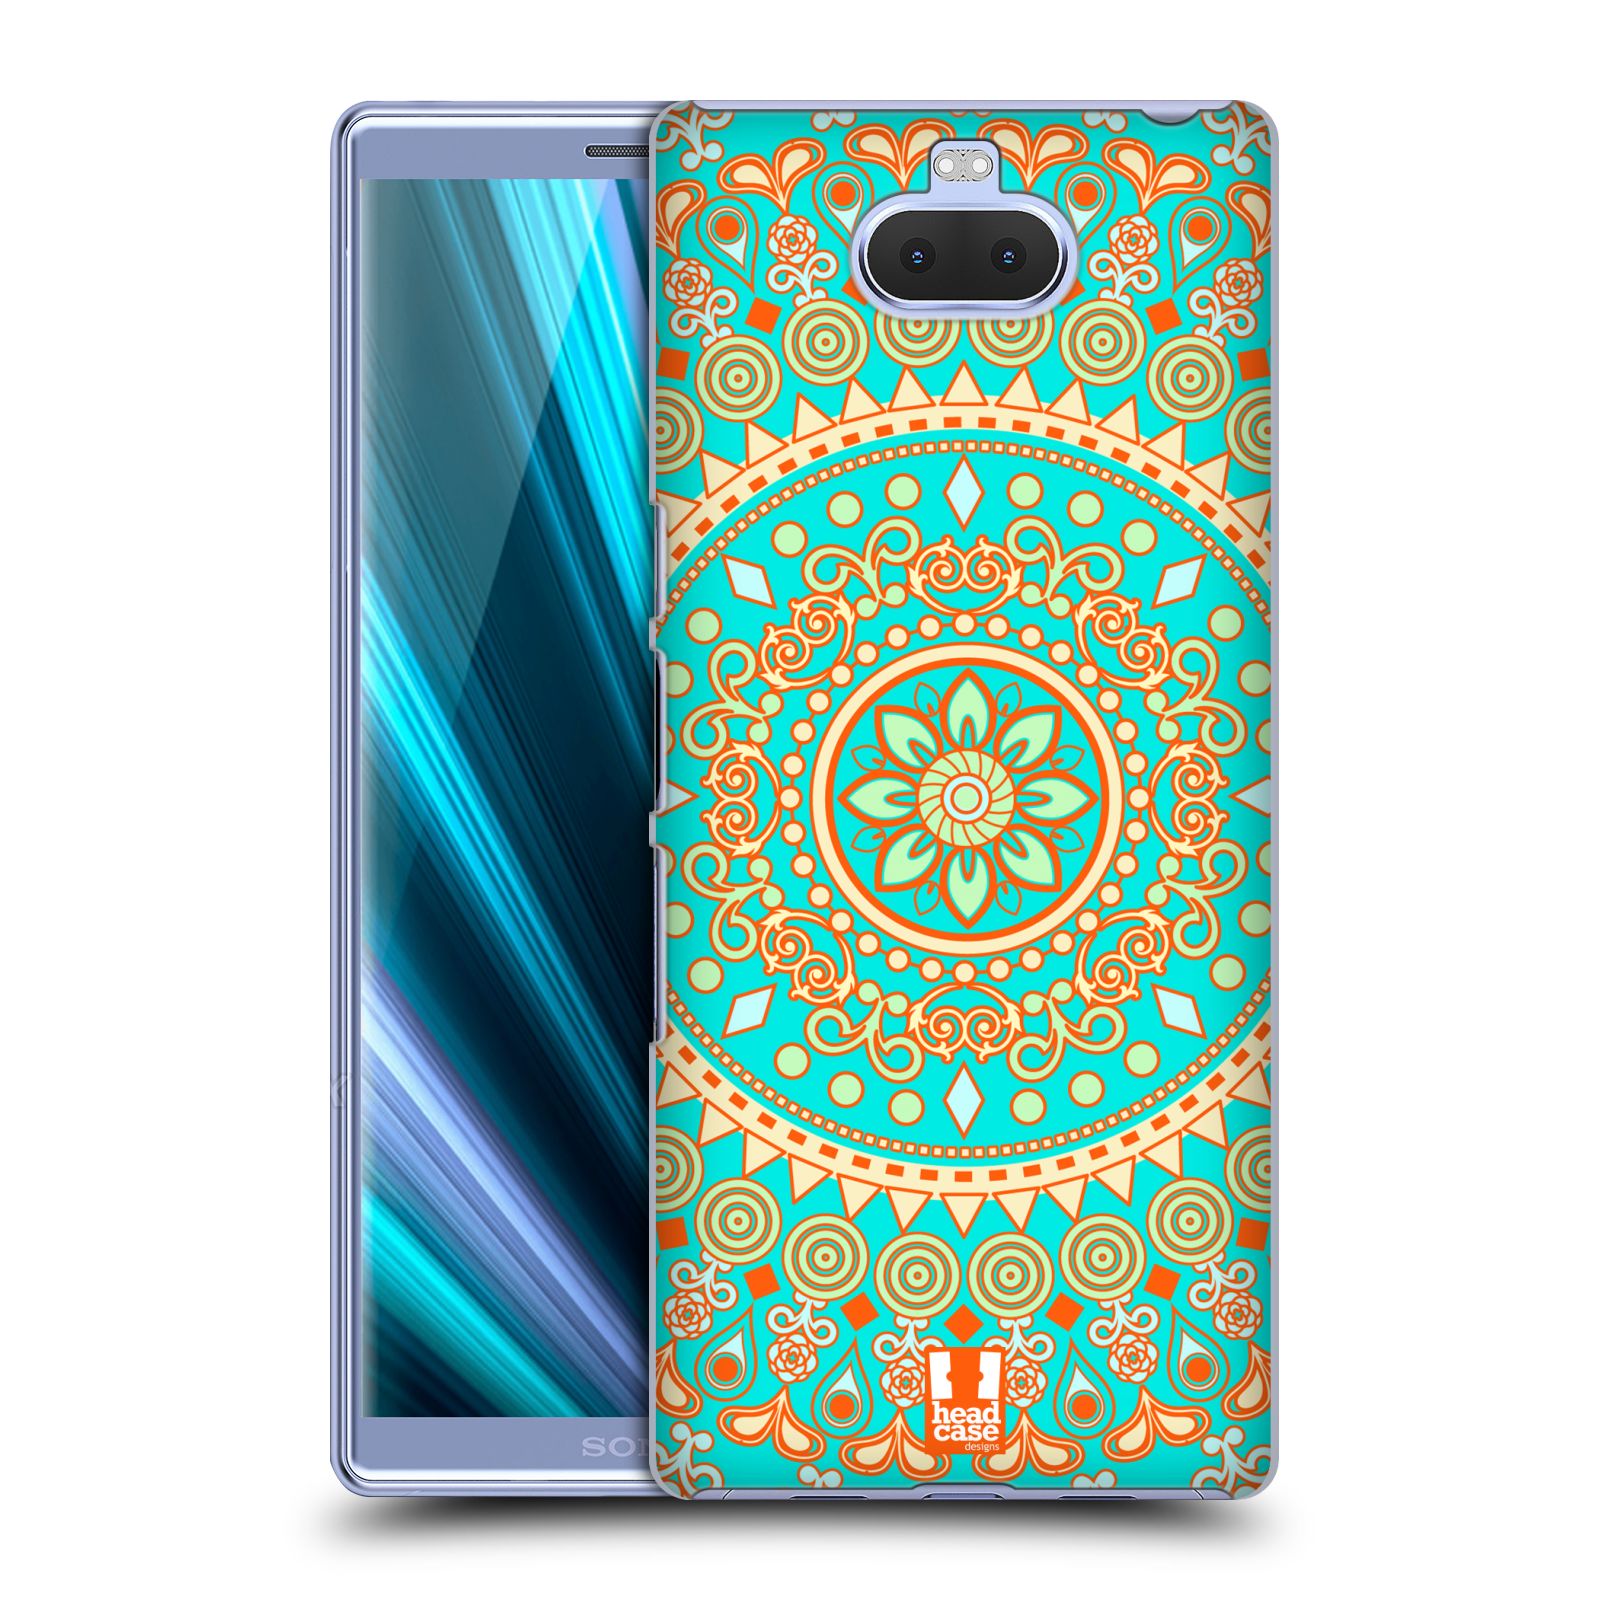 Pouzdro na mobil Sony Xperia 10 - Head Case - vzor Indie Mandala slunce barevný motiv TYRKYSOVÁ, ZELENÁ